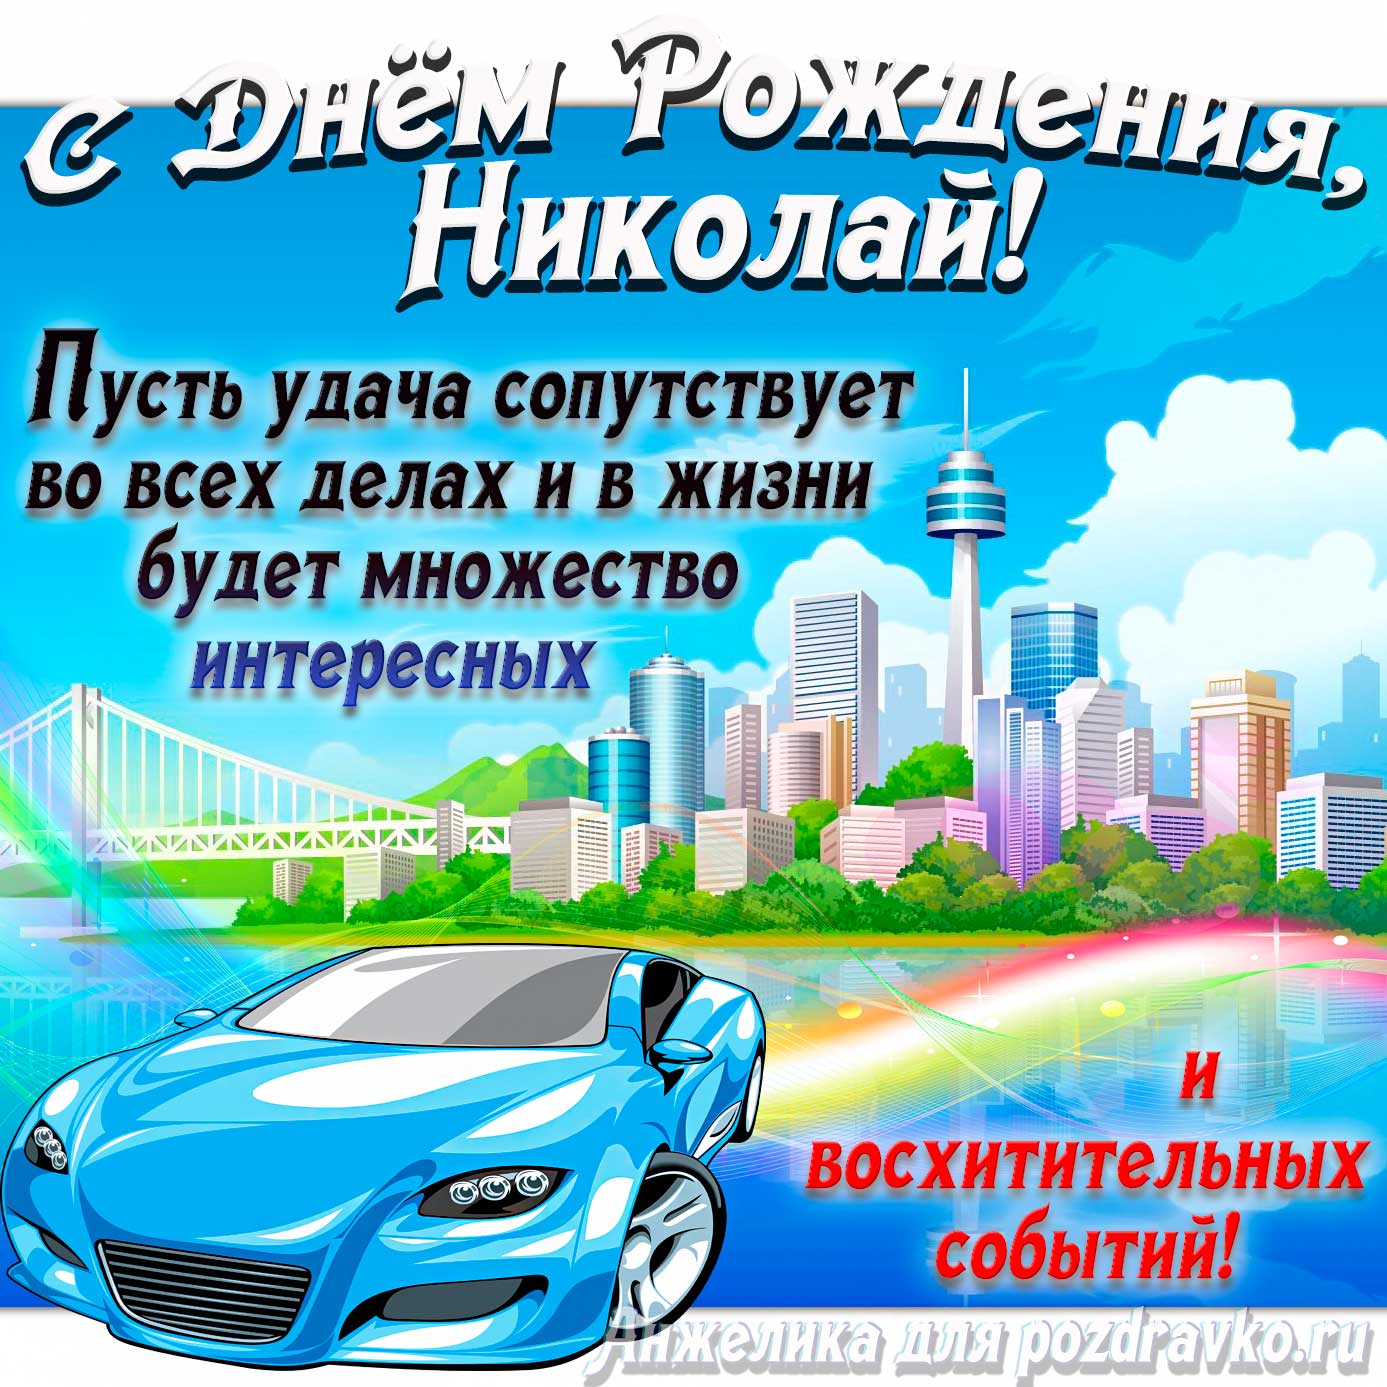 Открытка - с Днём Рождения Коля с голубой машиной и пожеланием. Скачать бесплатно или отправить картинку.